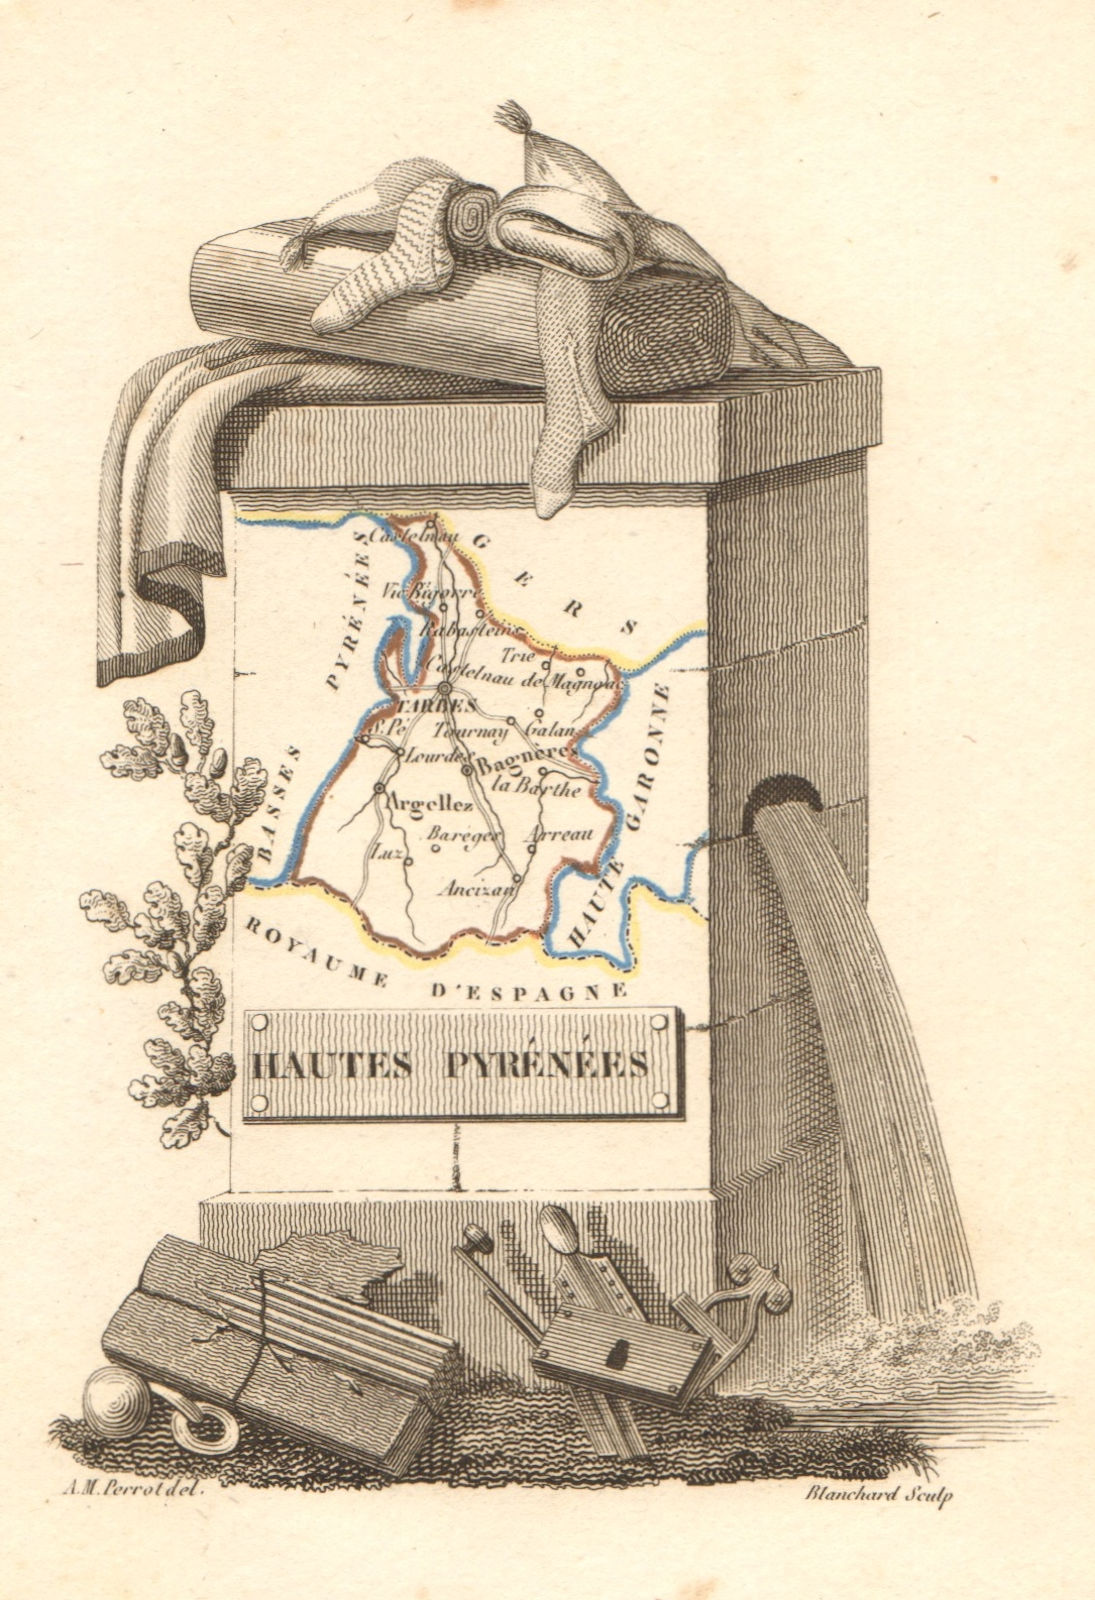 Associate Product HAUTES-PYRÉNÉES département. Scarce antique map/carte by A.M. PERROT 1823